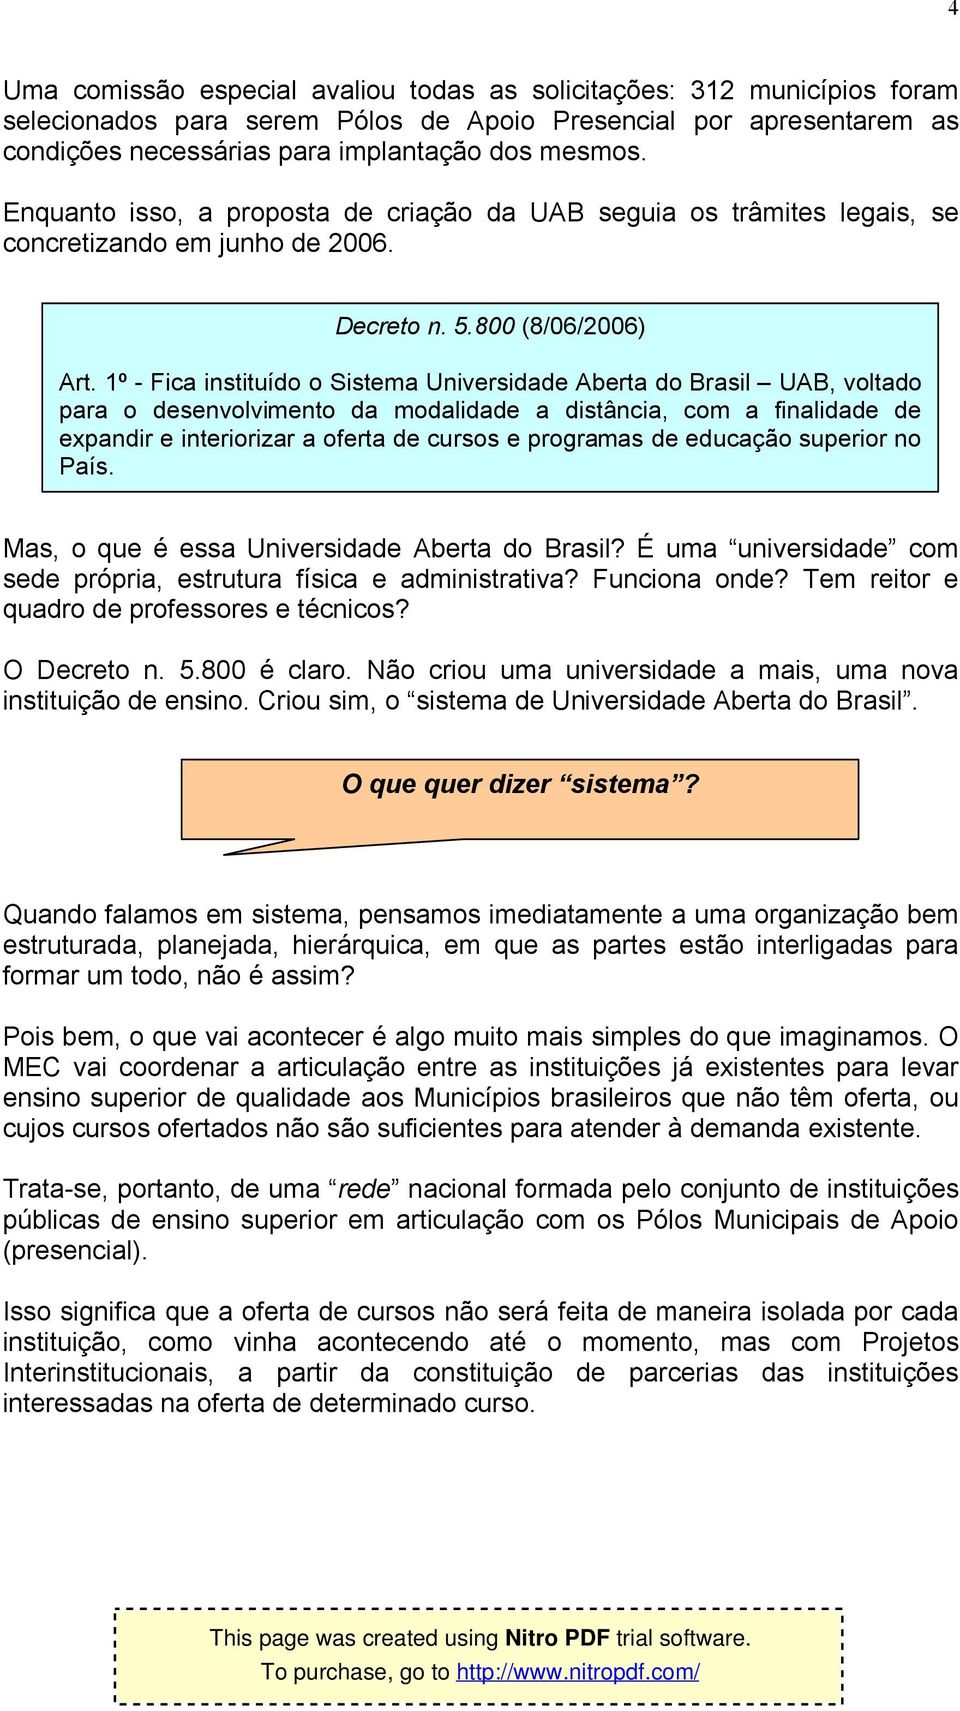 1º - Fica instituído o Sistema Universidade Aberta do Brasil UAB, voltado para o desenvolvimento da modalidade a distância, com a finalidade de expandir e interiorizar a oferta de cursos e programas